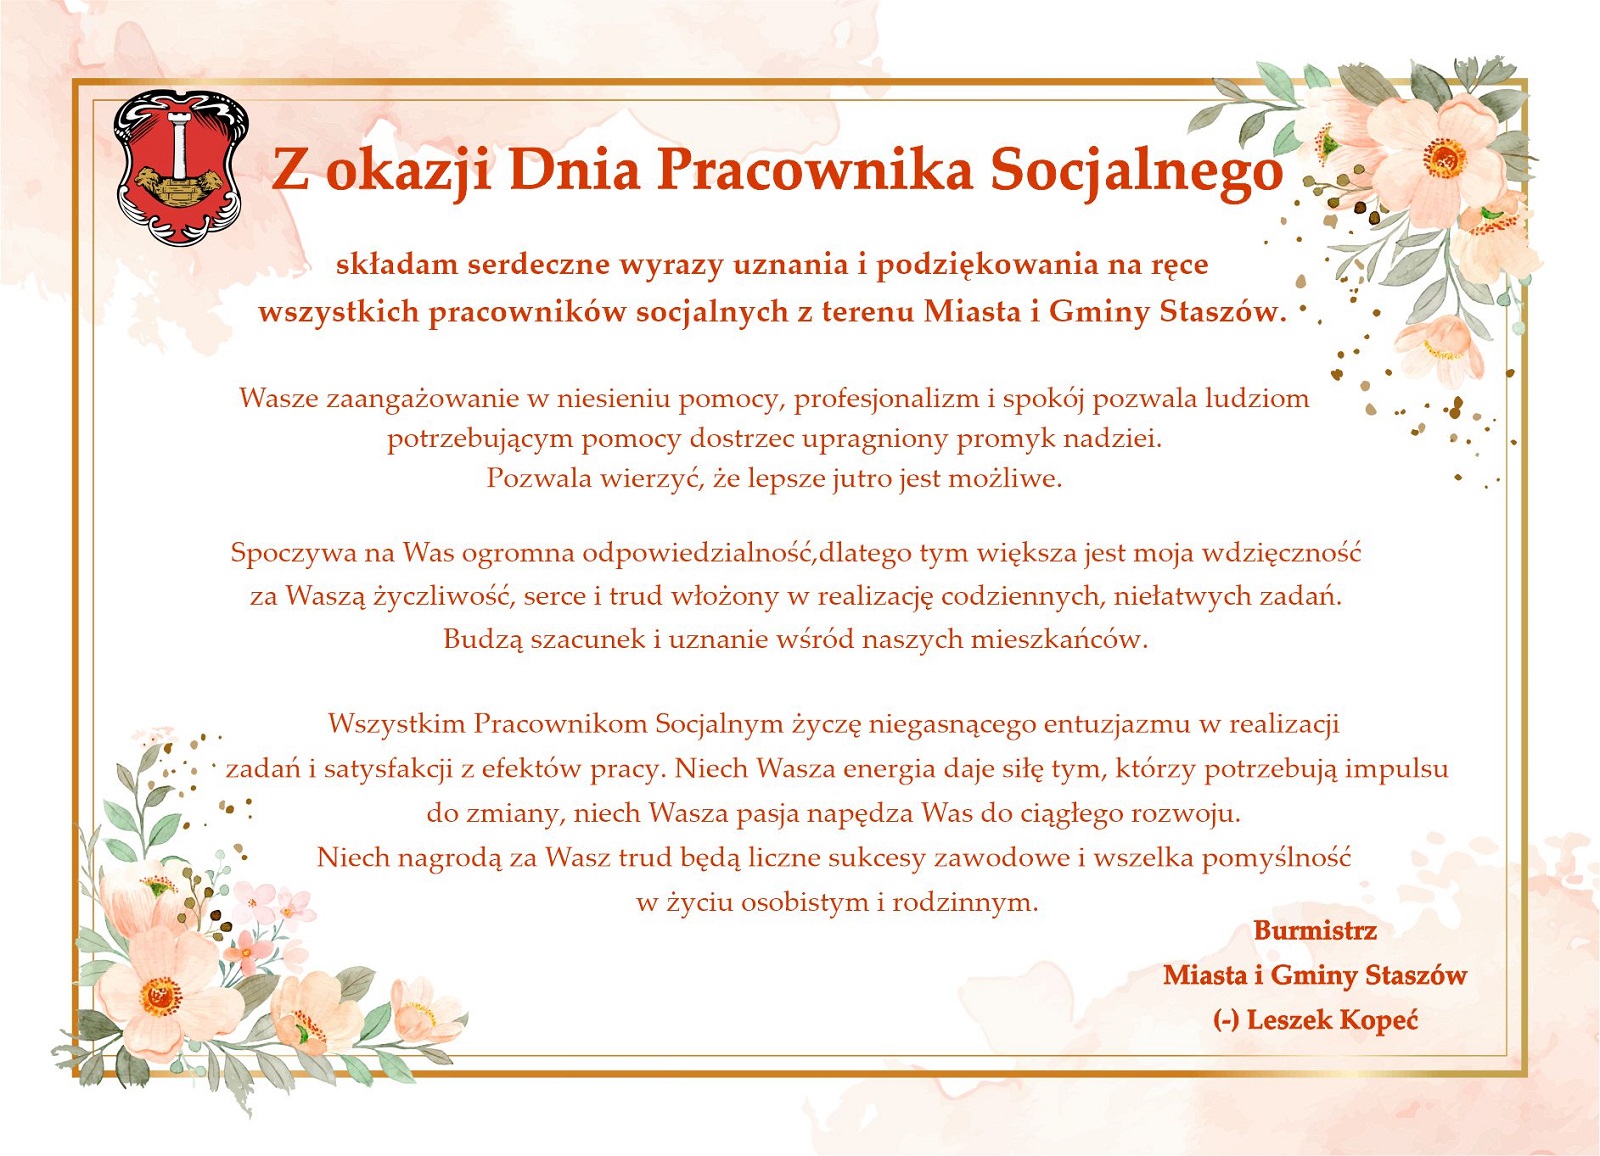 Z okazji Dnia Pracownika Socjalnego składam serdeczne wyrazy uznania i podziękowania na ręce wszystkich pracowników socjalnych z terenu Miasta i Gminy Staszów. 